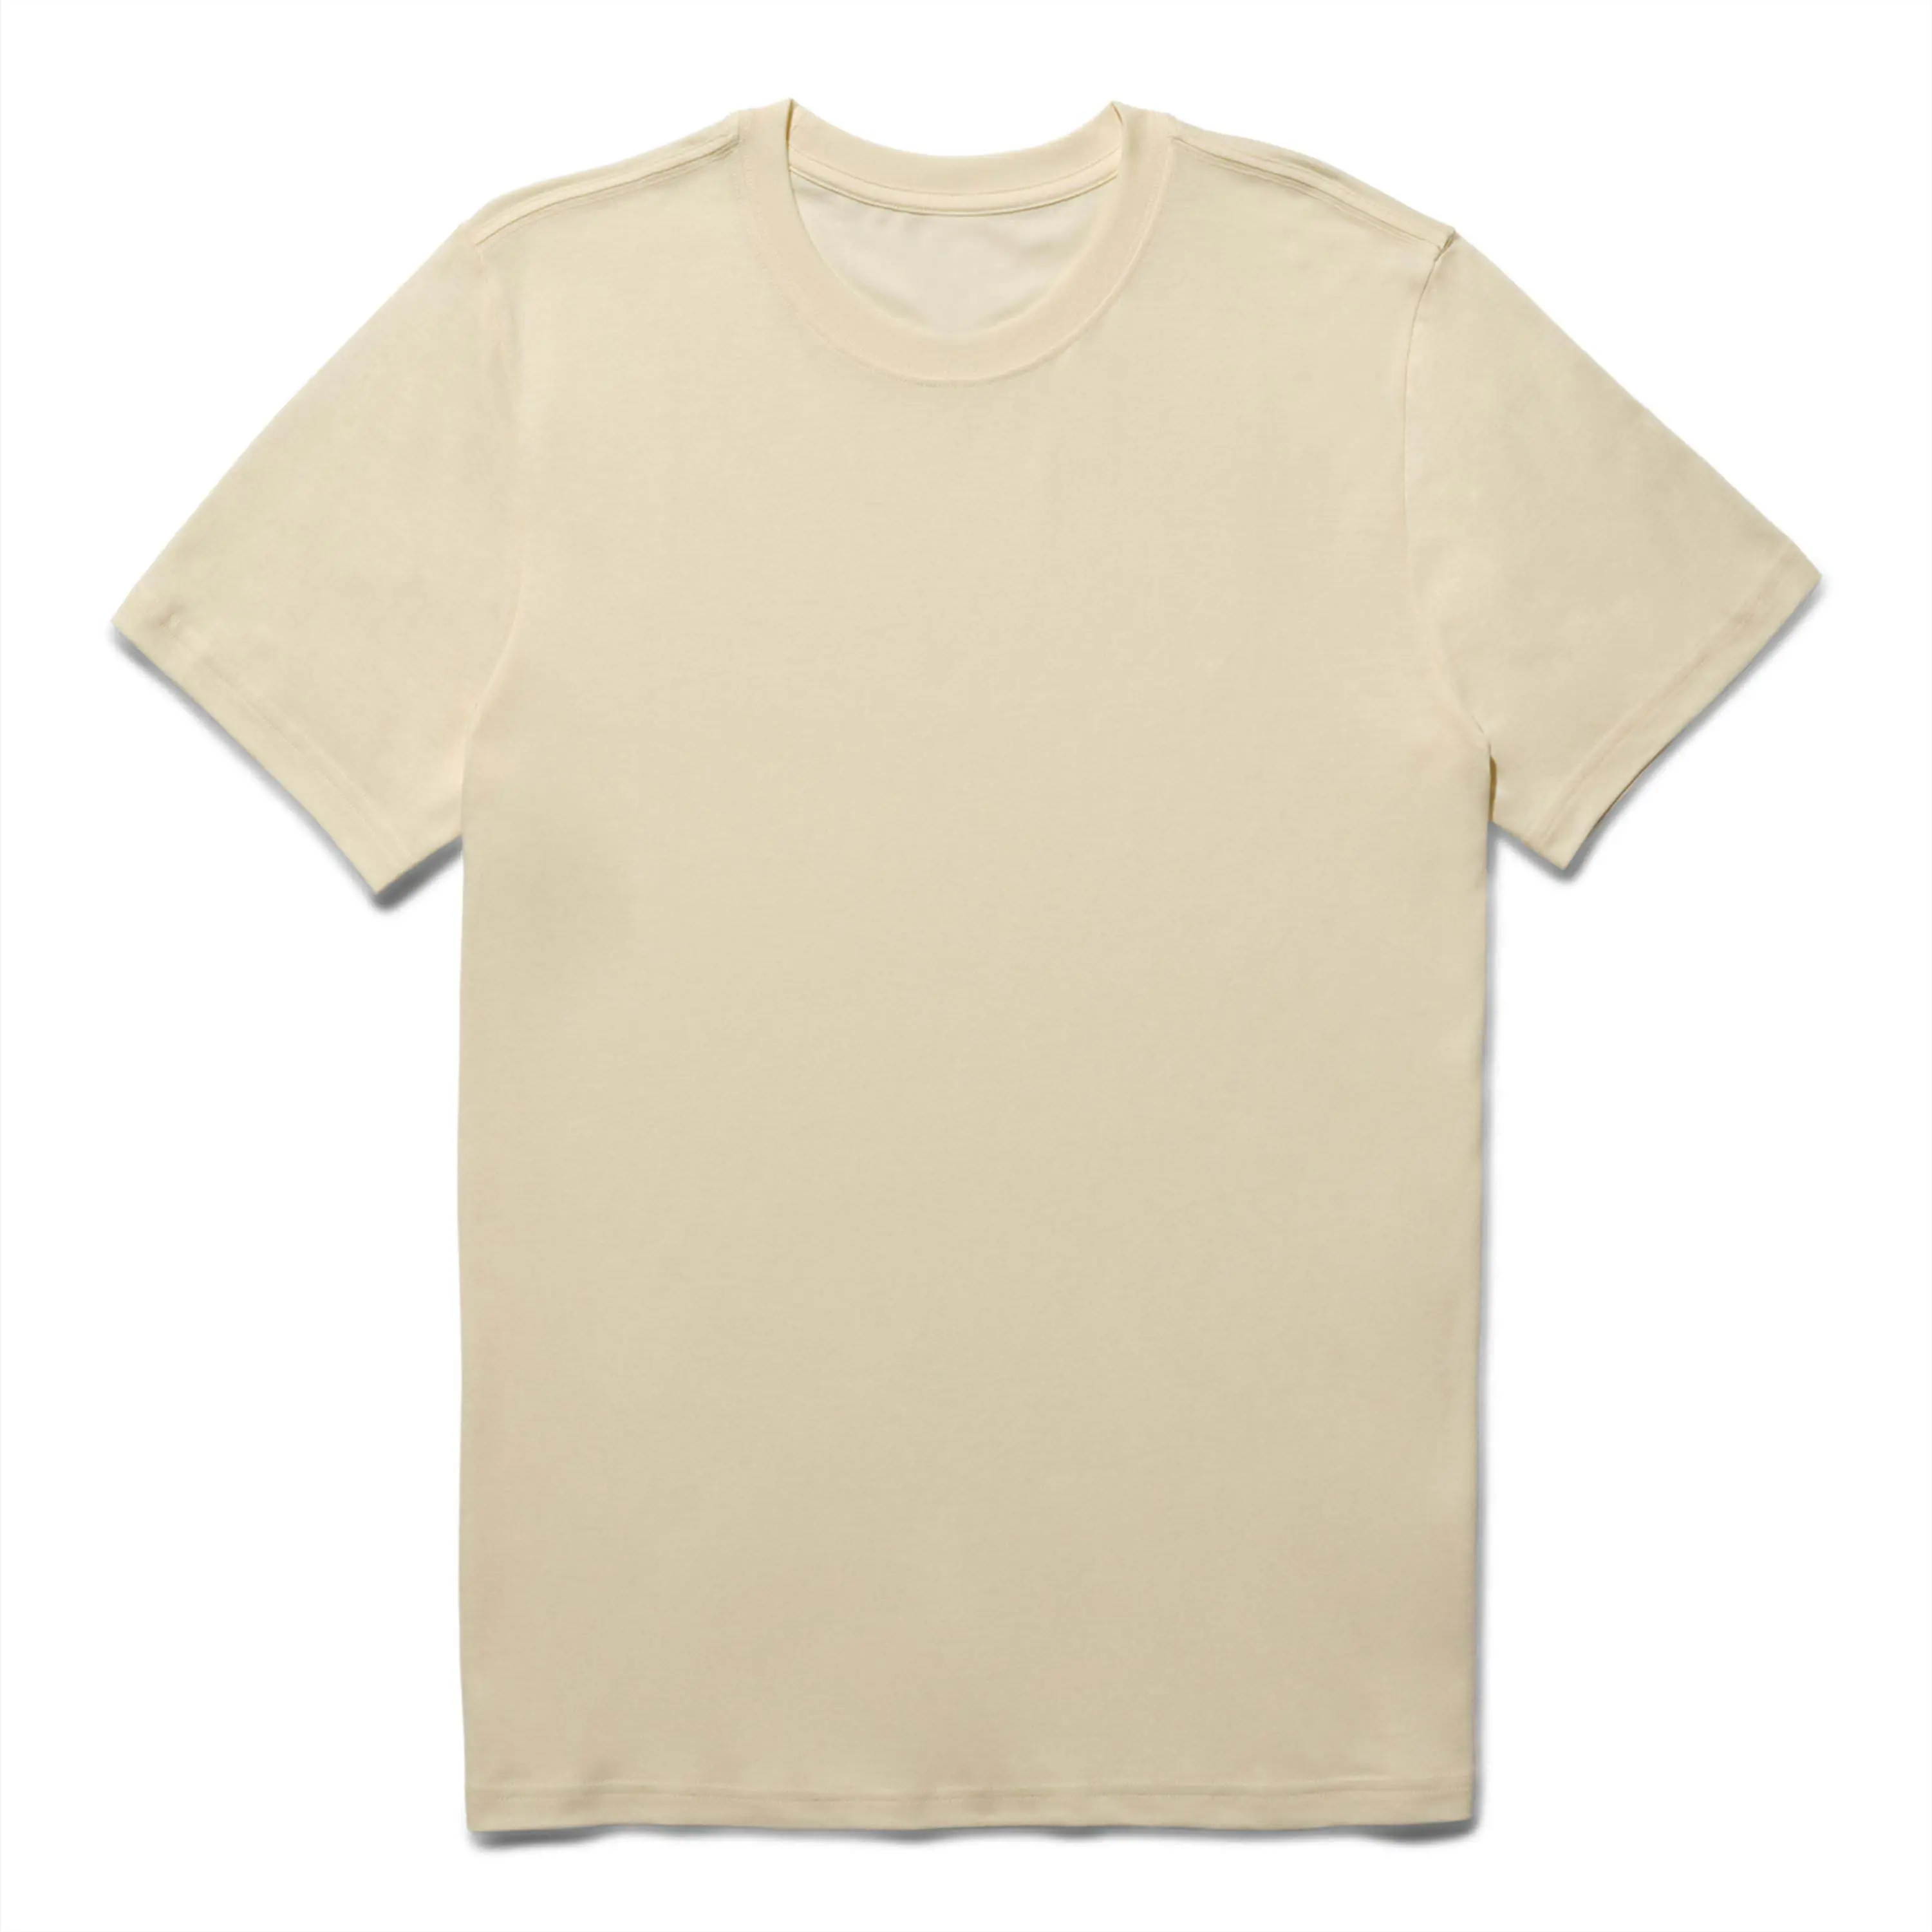 customized silk screen print cotton T shirt regular fit oversize drop shoulder T shirt 100% cotton regular cut t shirt